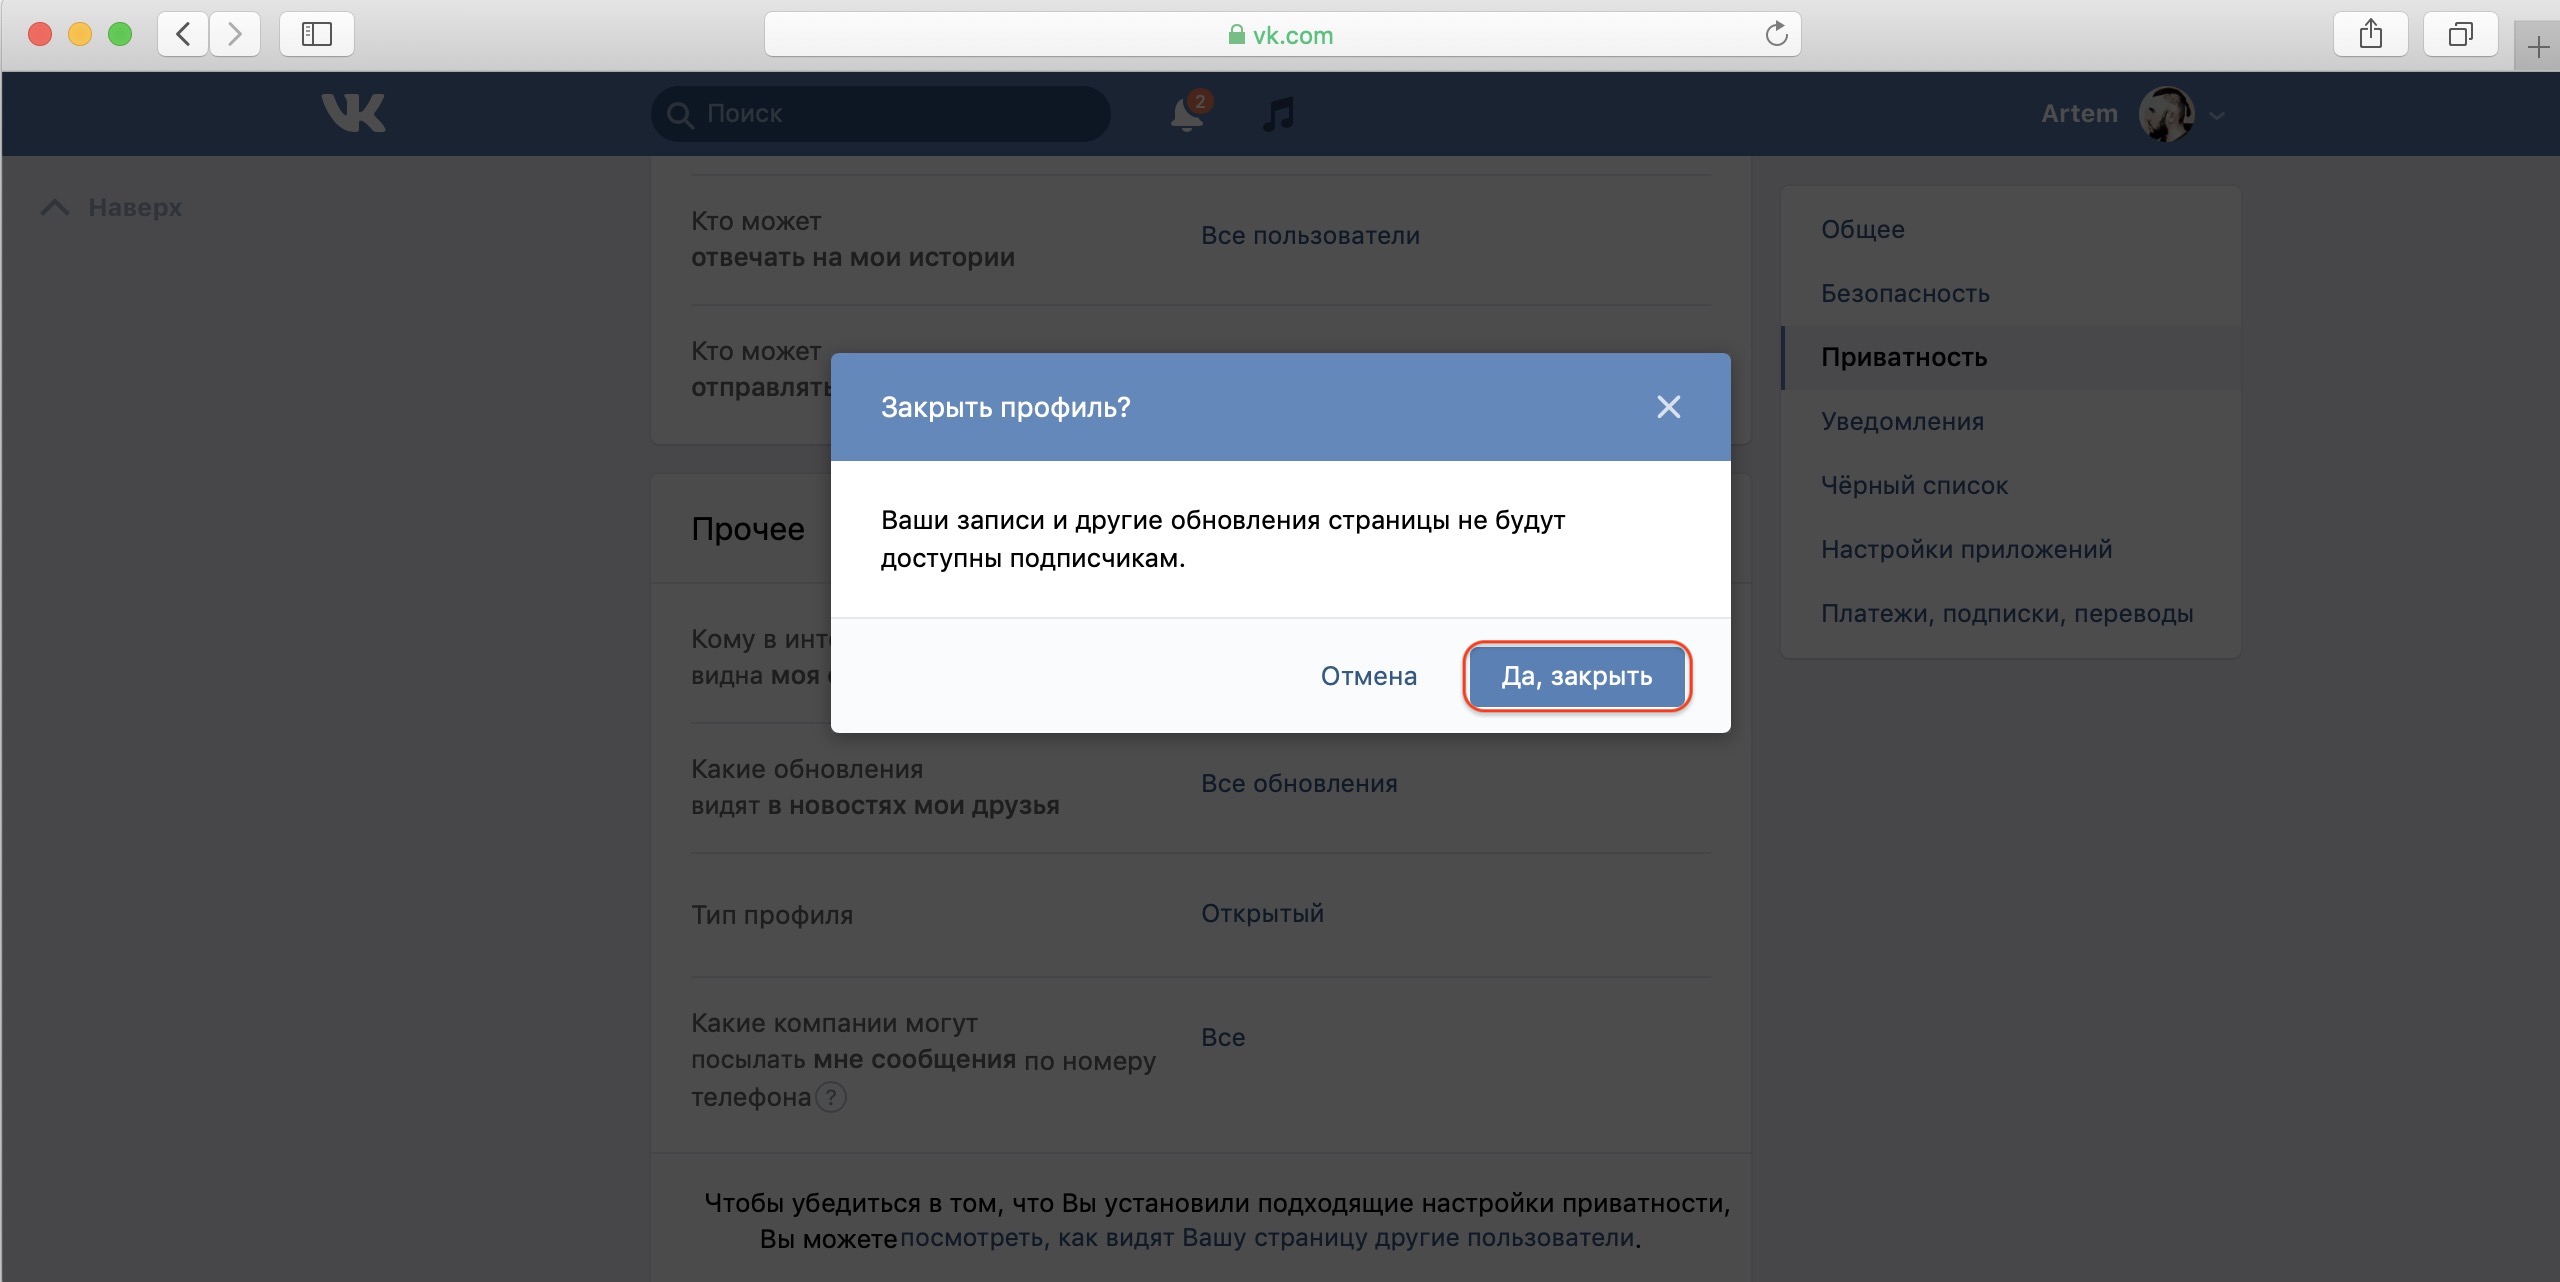 Как перевести публичную страницу в группу ВКонтакте? — блог OneSpot